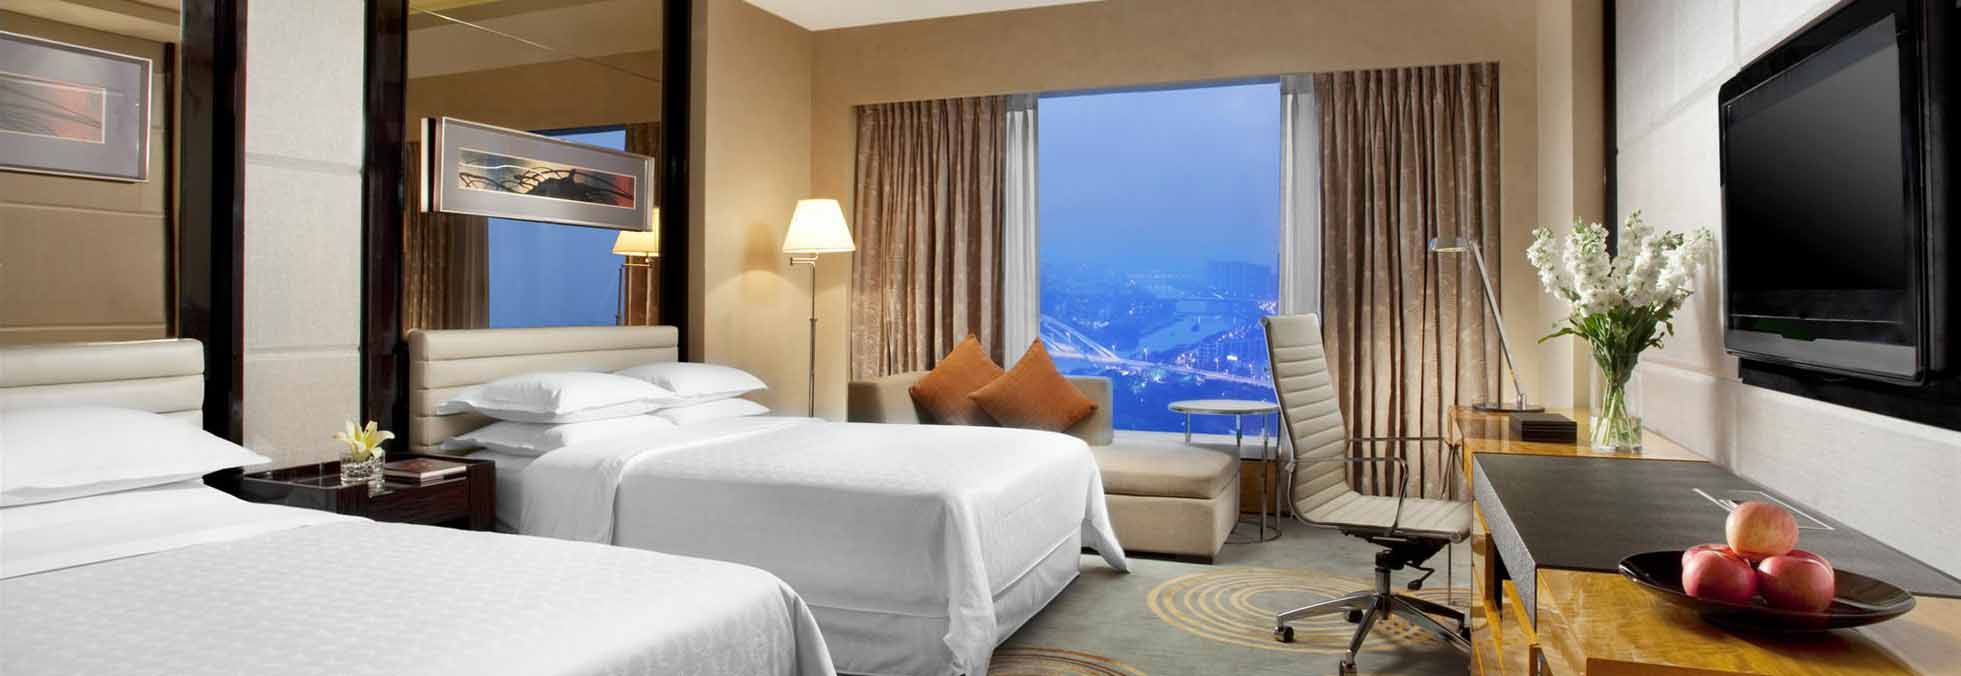 Três empresas chinesas interessadas em gigante hoteleira americana